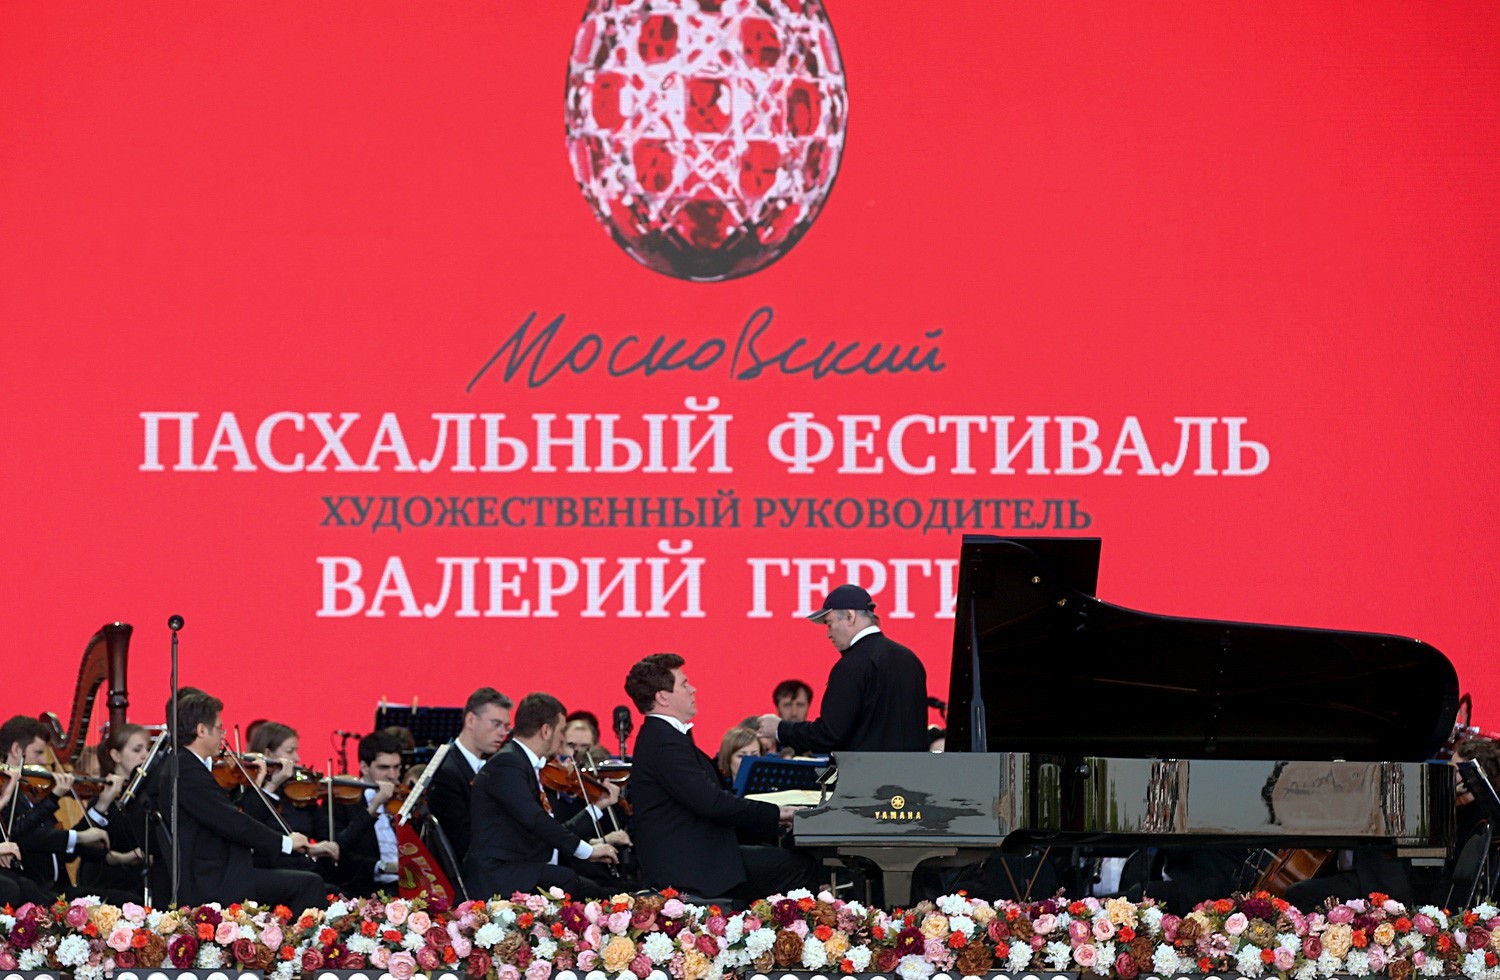 Ruski dirigent, generalni in umetniški direktor Mariinskega gledališča Valerij Gergijev ter pianist Denis Matsujev na velikonočnem festivalu na Pokloni gori, Moskva.